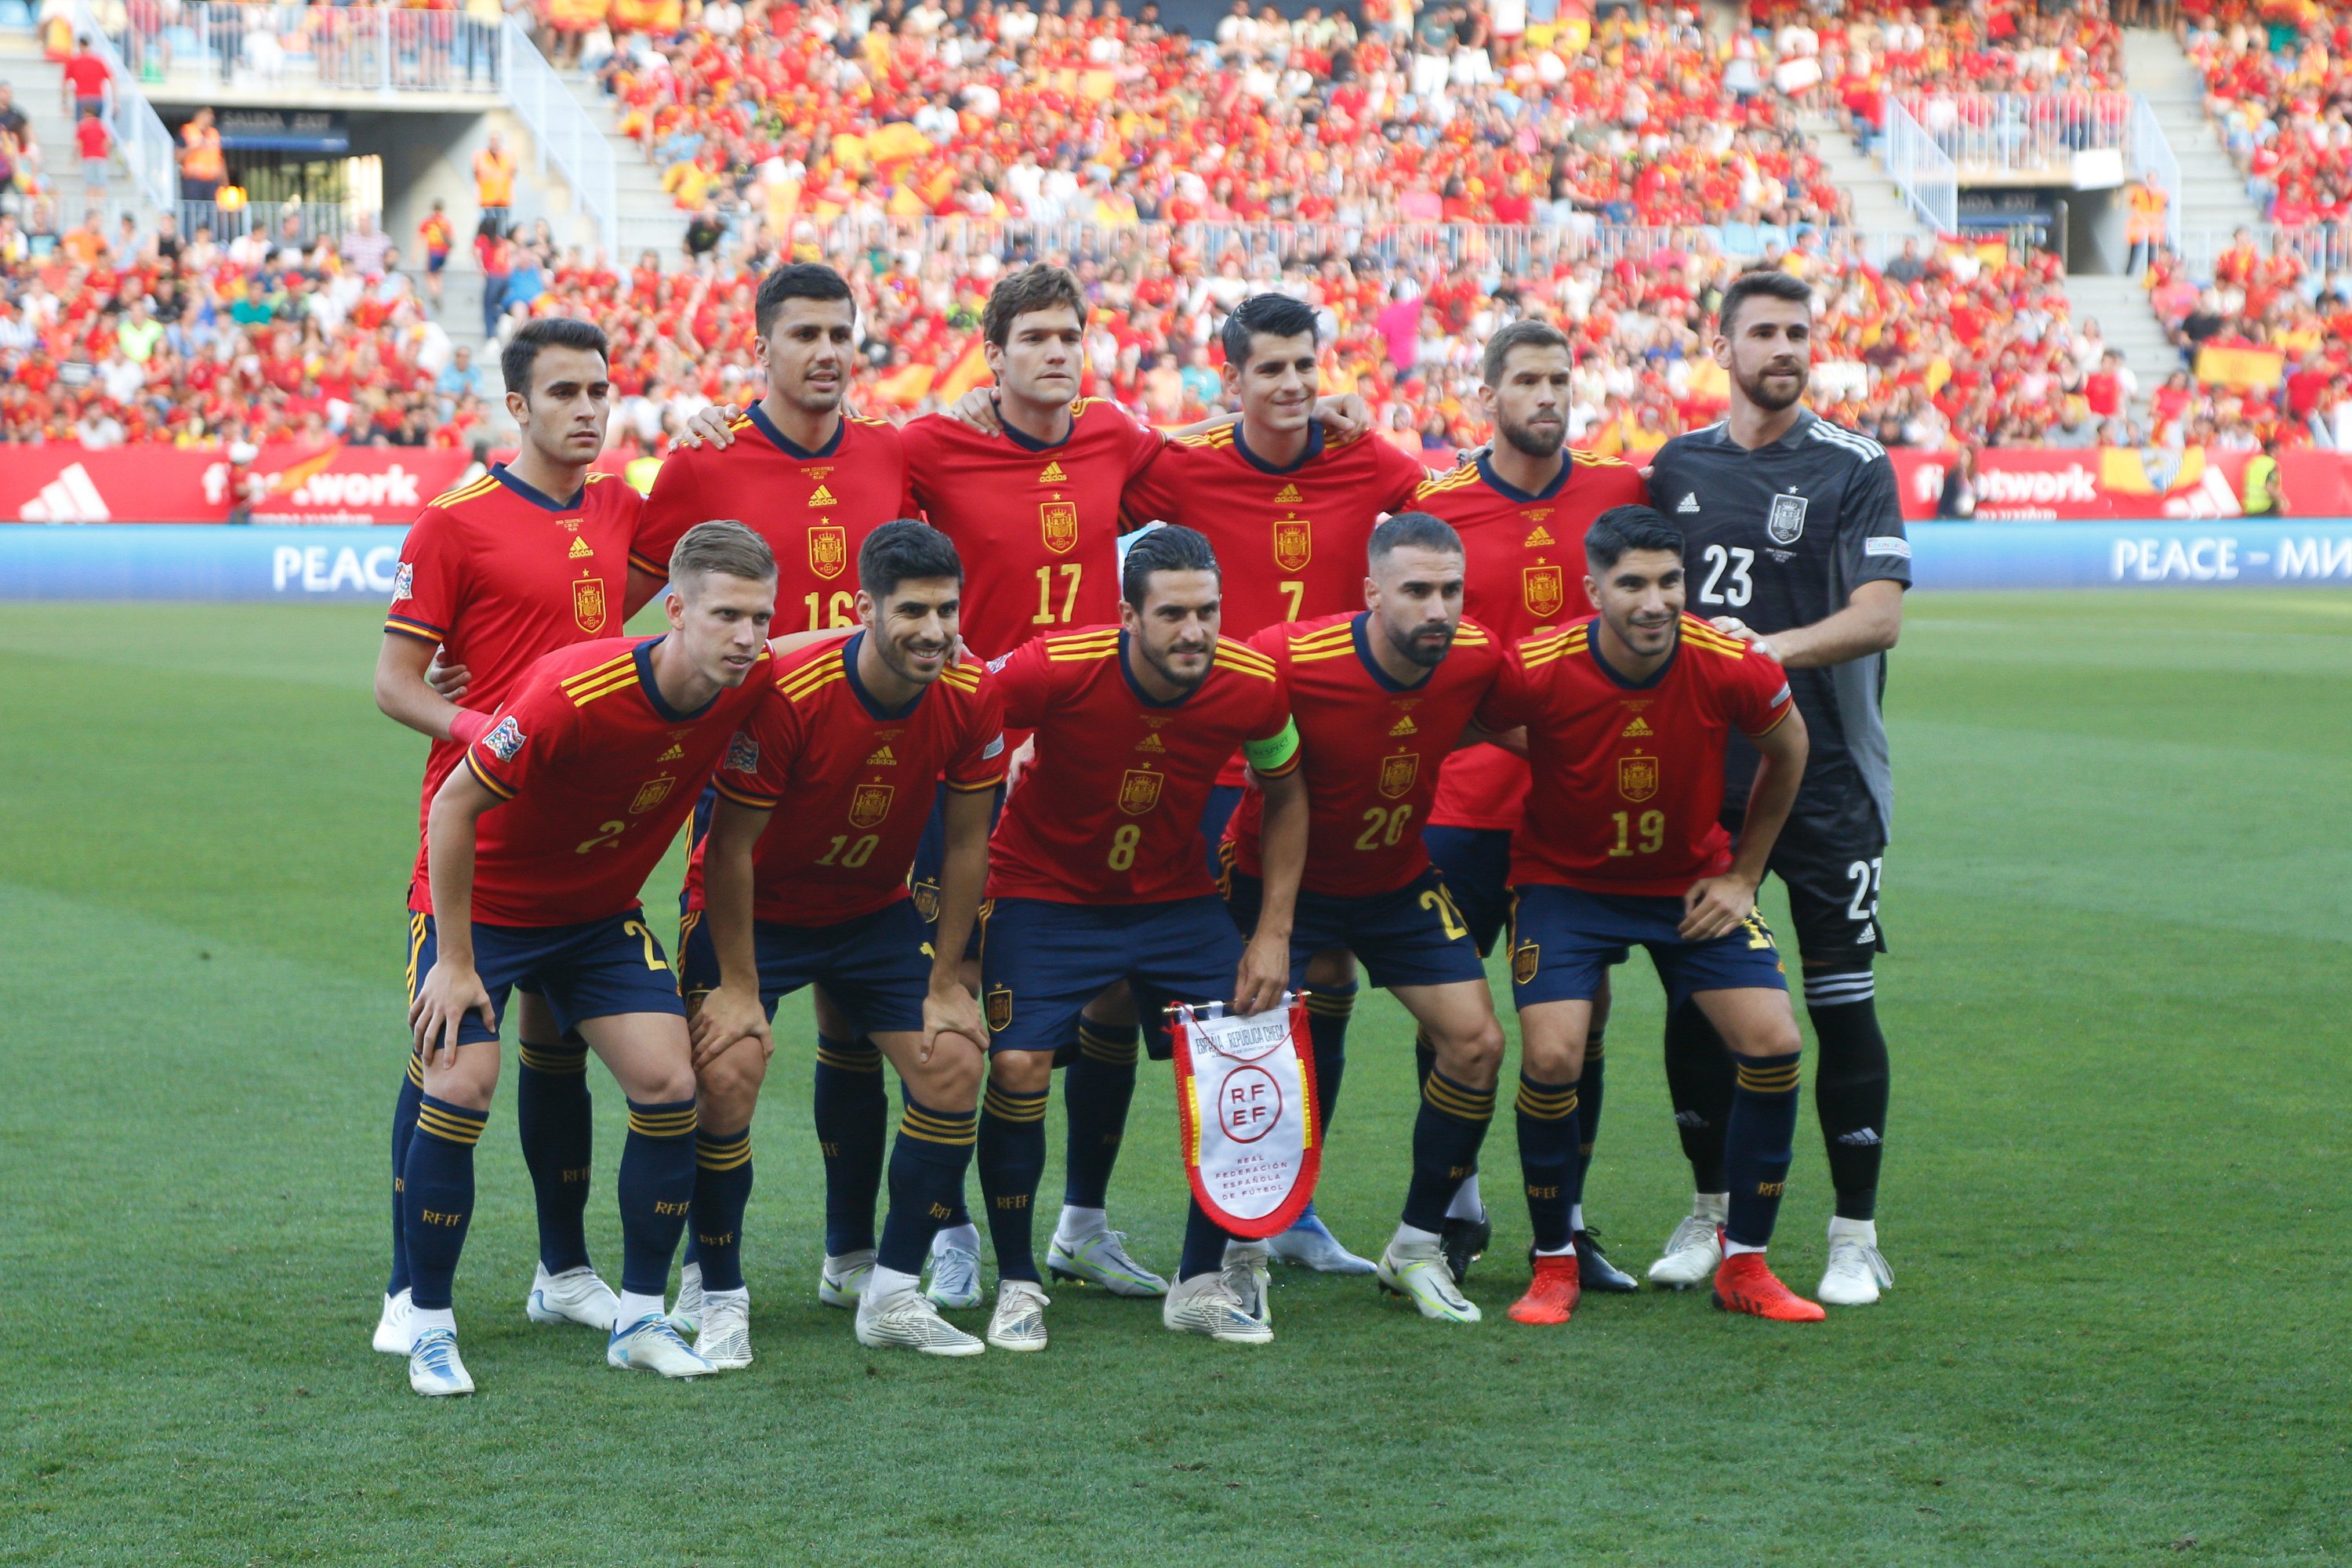 confirmar aluminio Contradicción Lista Jugadores España Mundial 2022: Horarios, Jugadores, Partidos